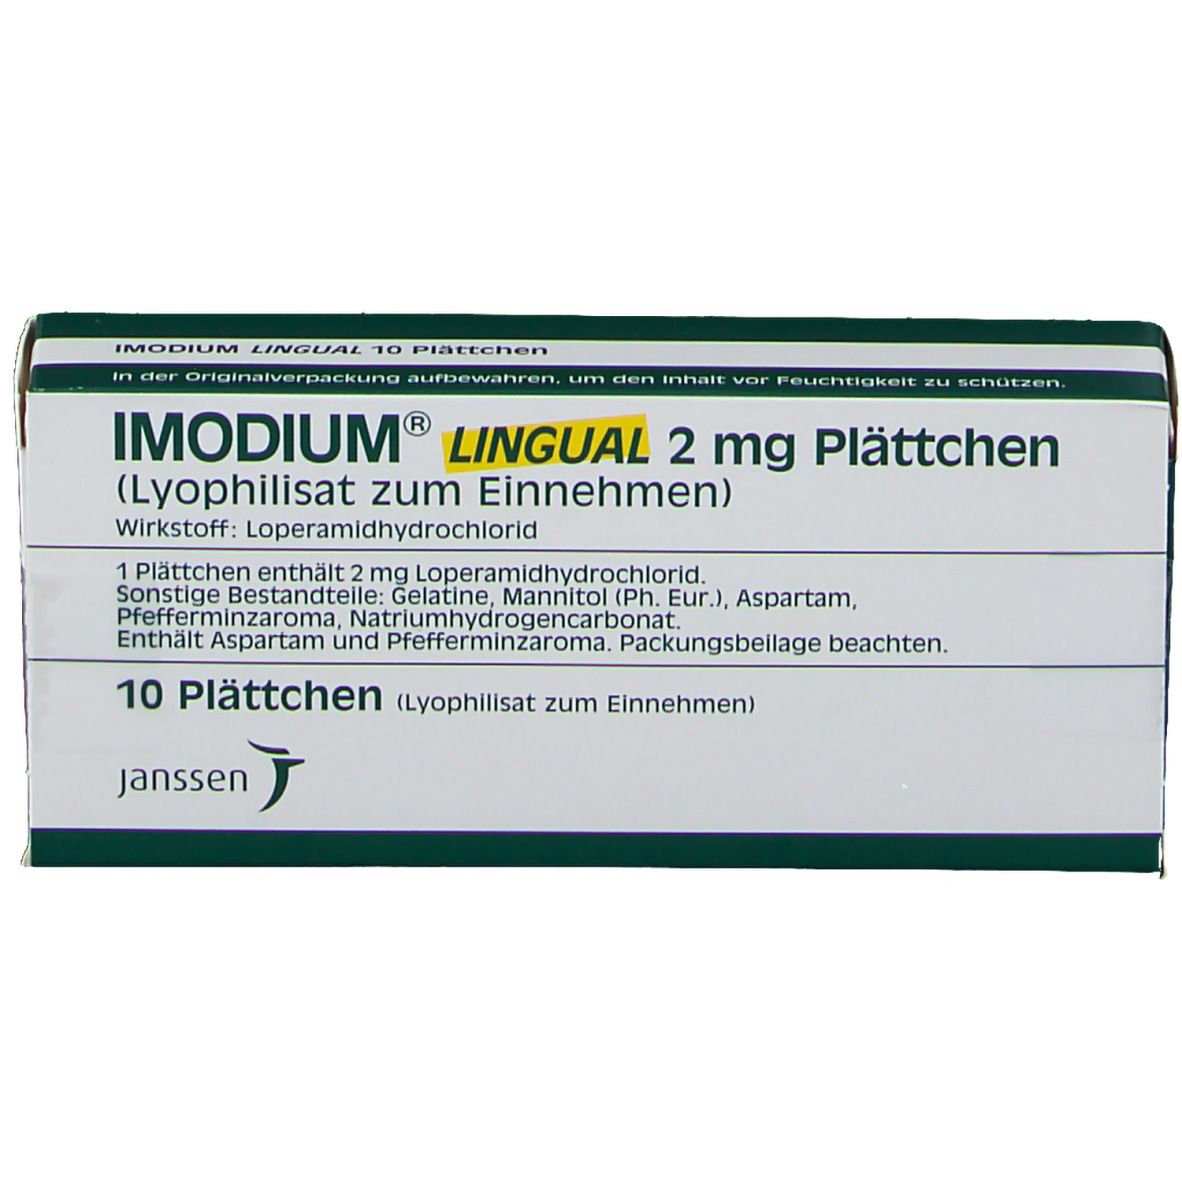 IMODIUM® LINGUAL 2 mg Plättchen